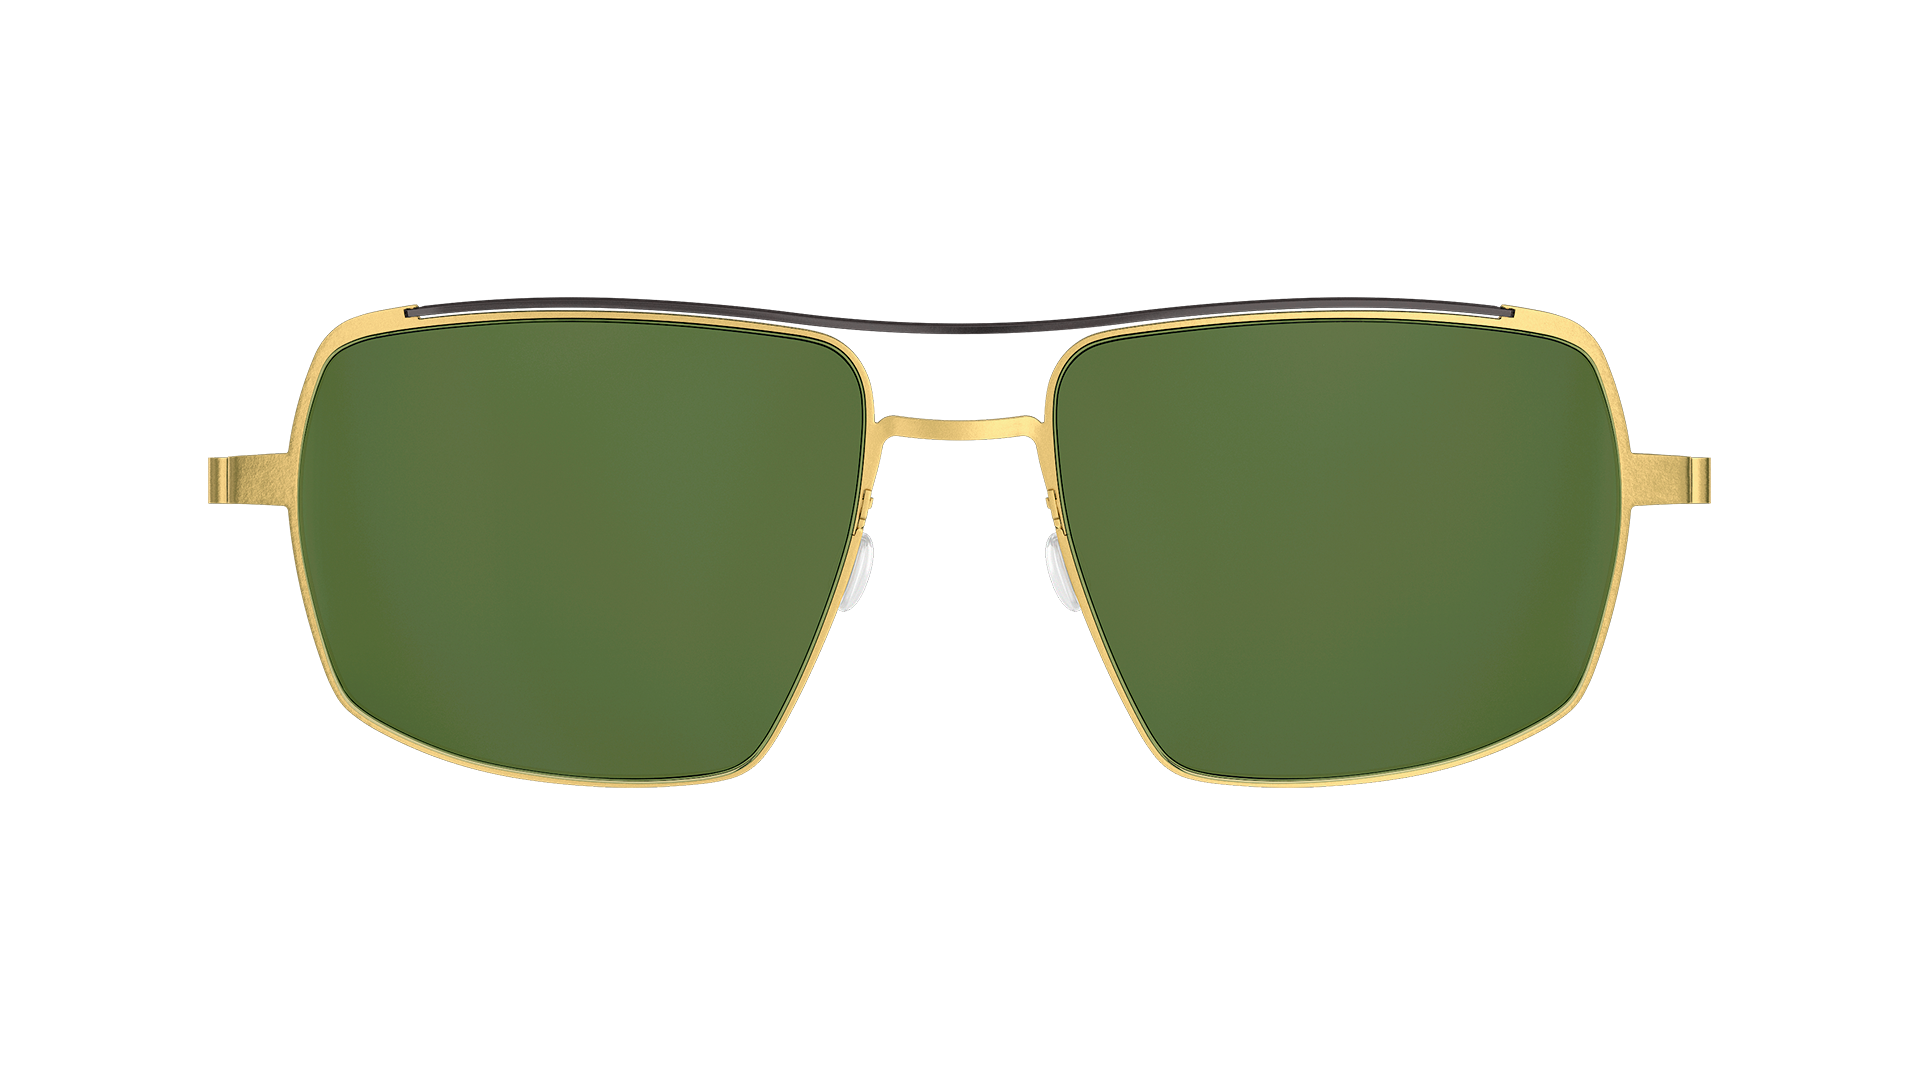 LINDBERG Model 8909 rounded rectangle shape gold titanium sunglasses with double bar bridge